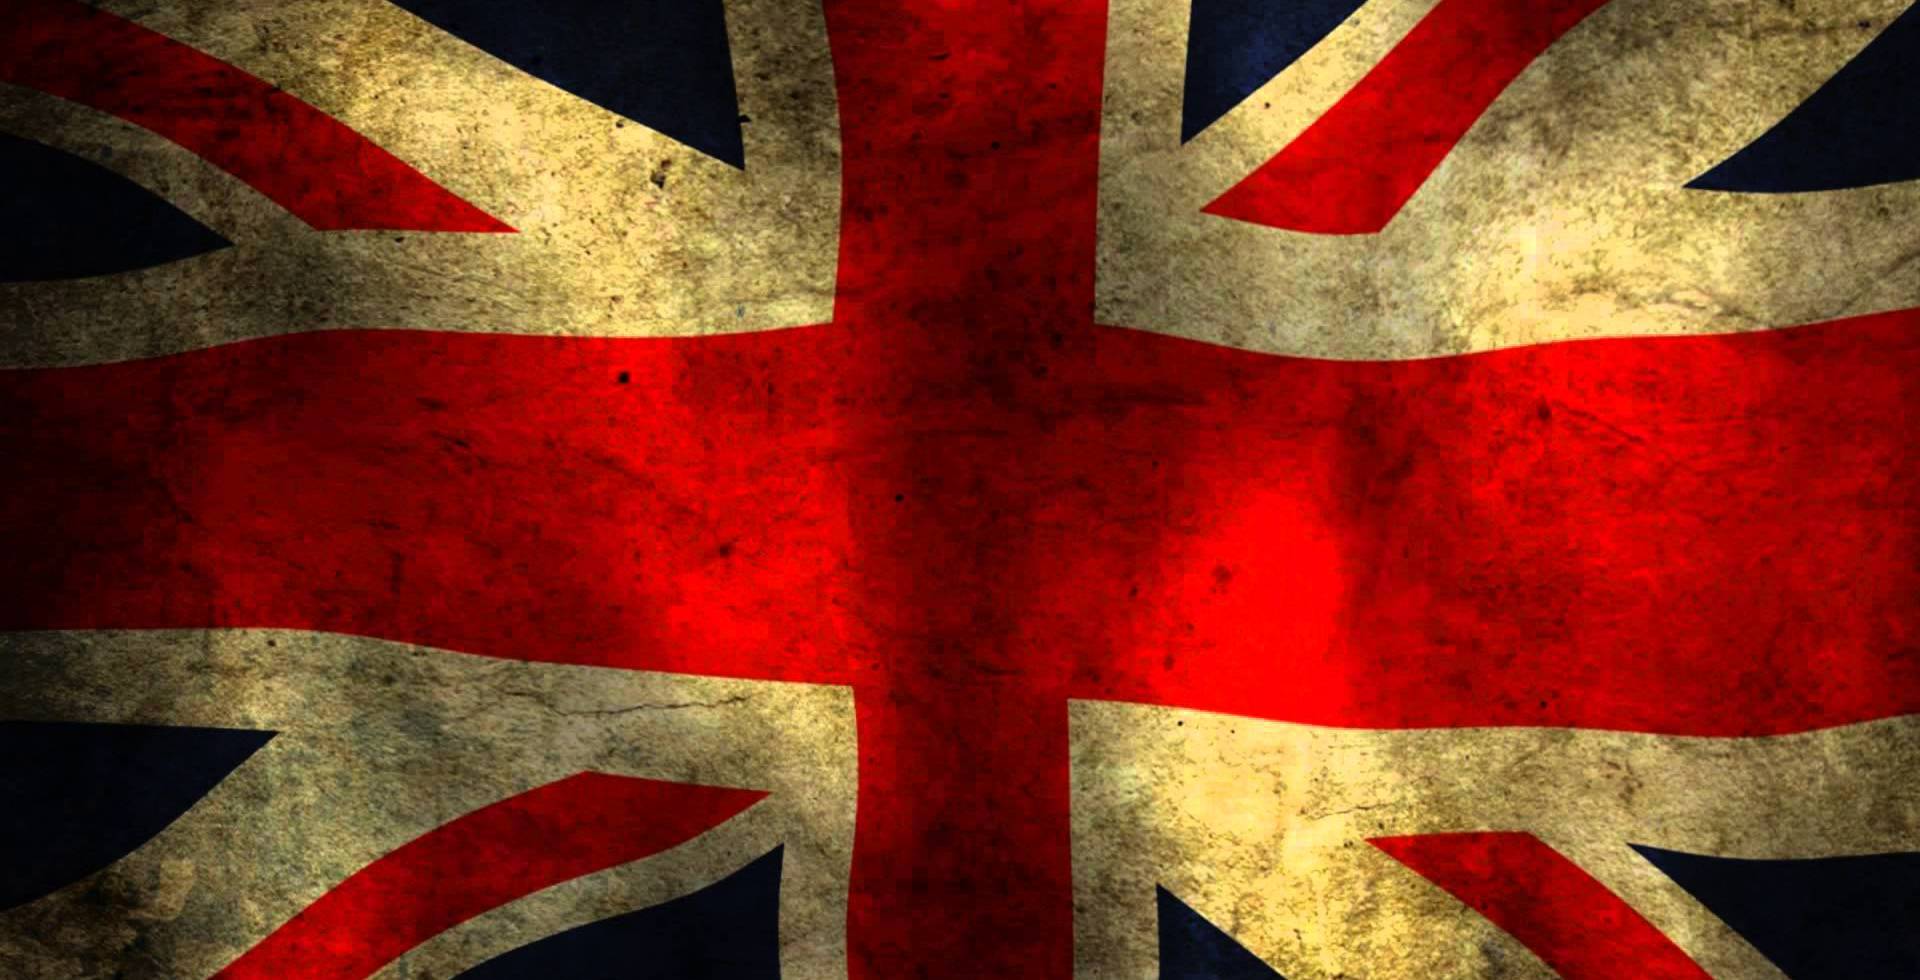 ΕΚΤΑΚΤΟ: Το βρετανικό Κοινοβούλιο έκανε δεκτό το νομοσχέδιο για την ενεργοποίηση του Brexit (UPD 2)